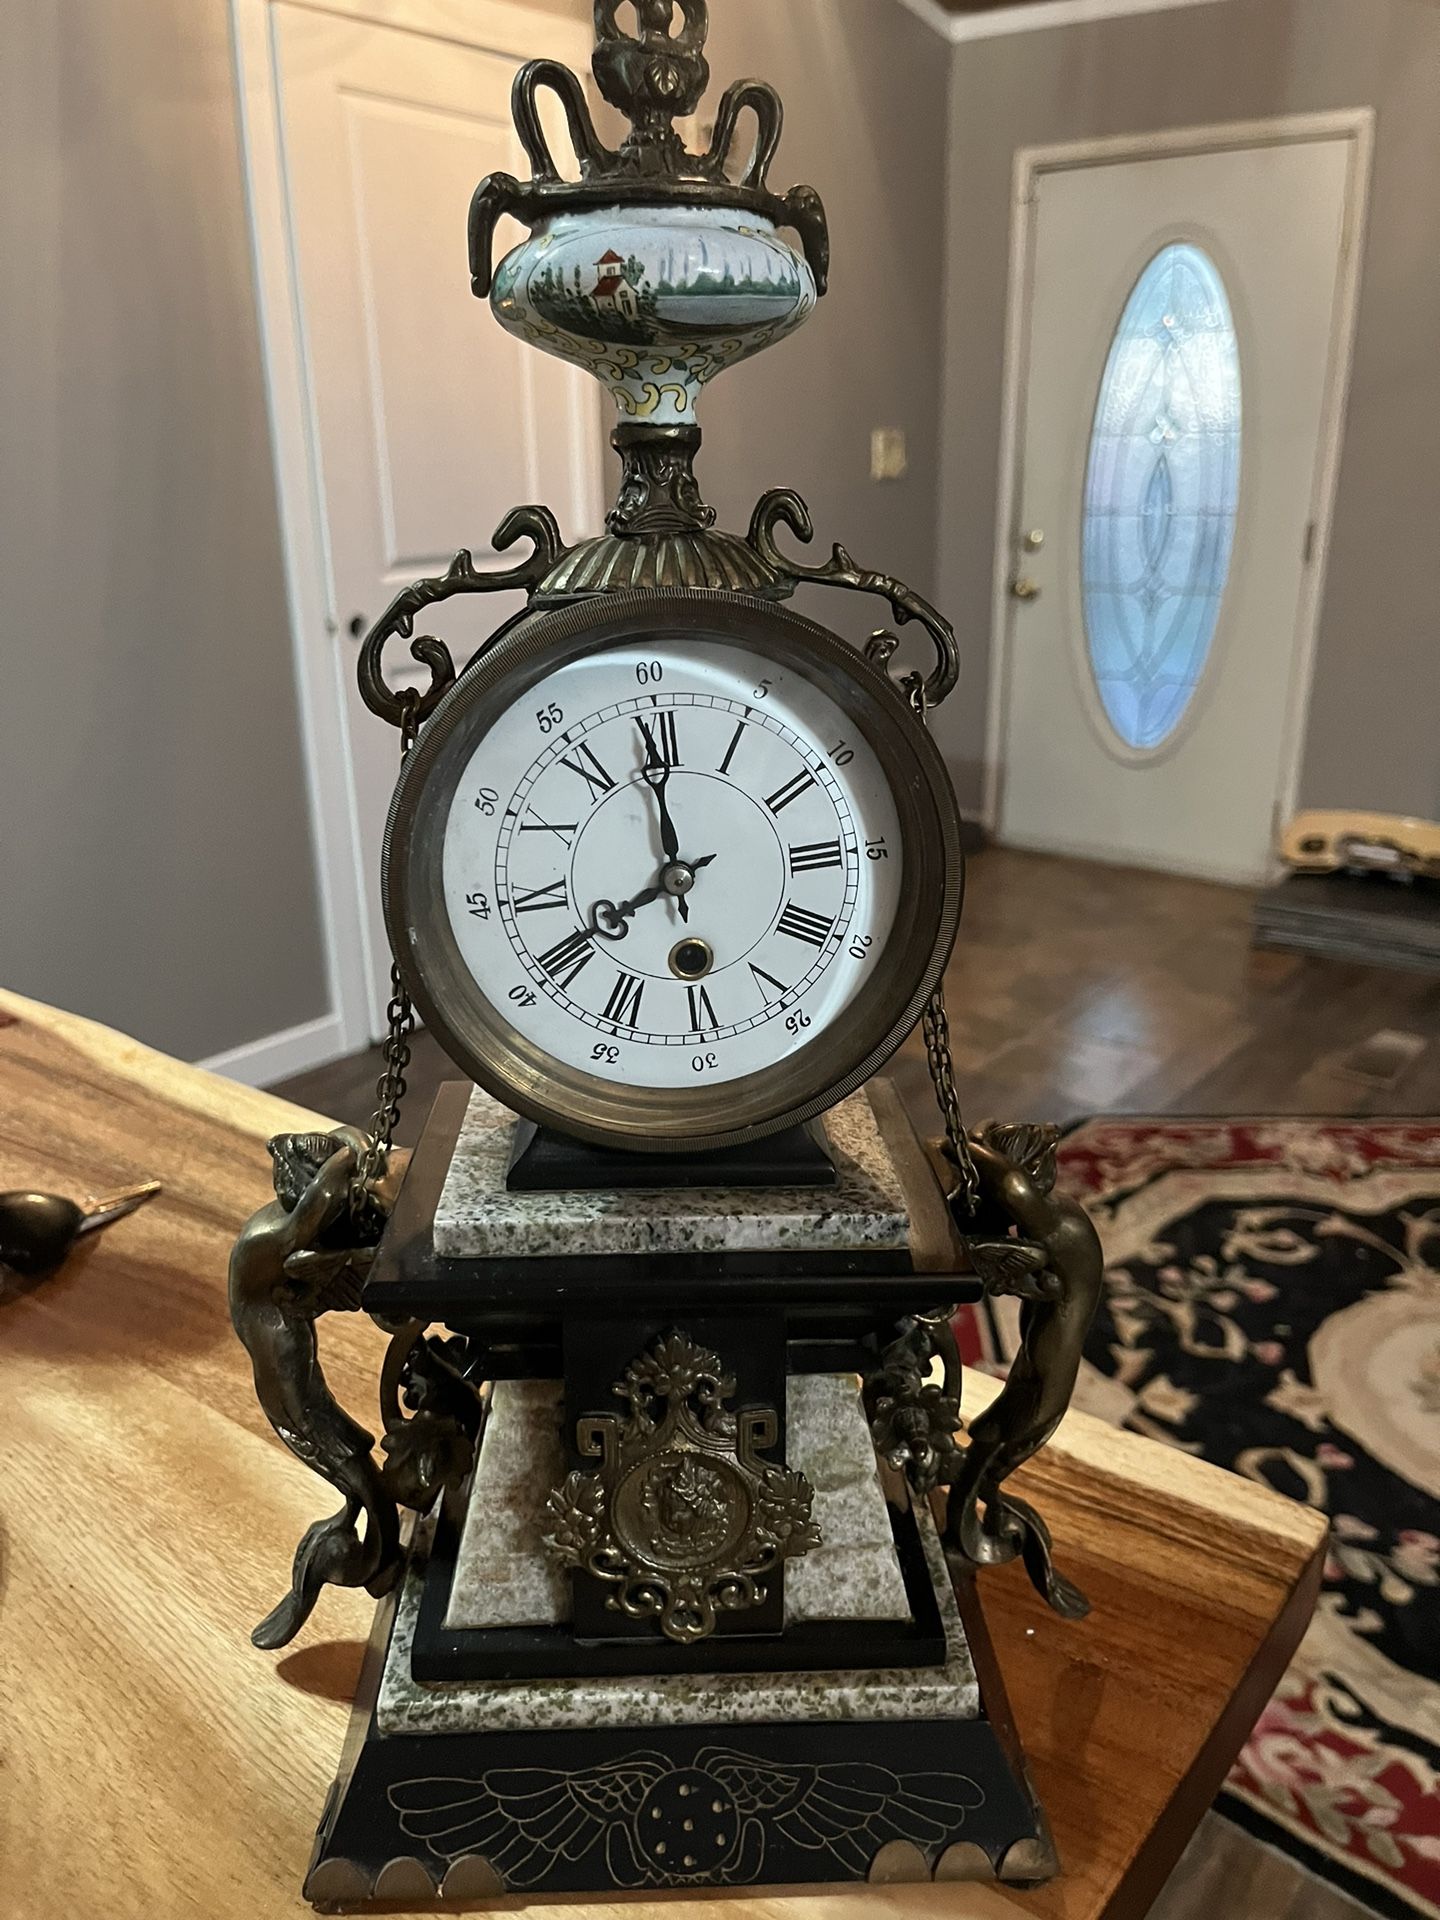 Antique French Pendulum Clock